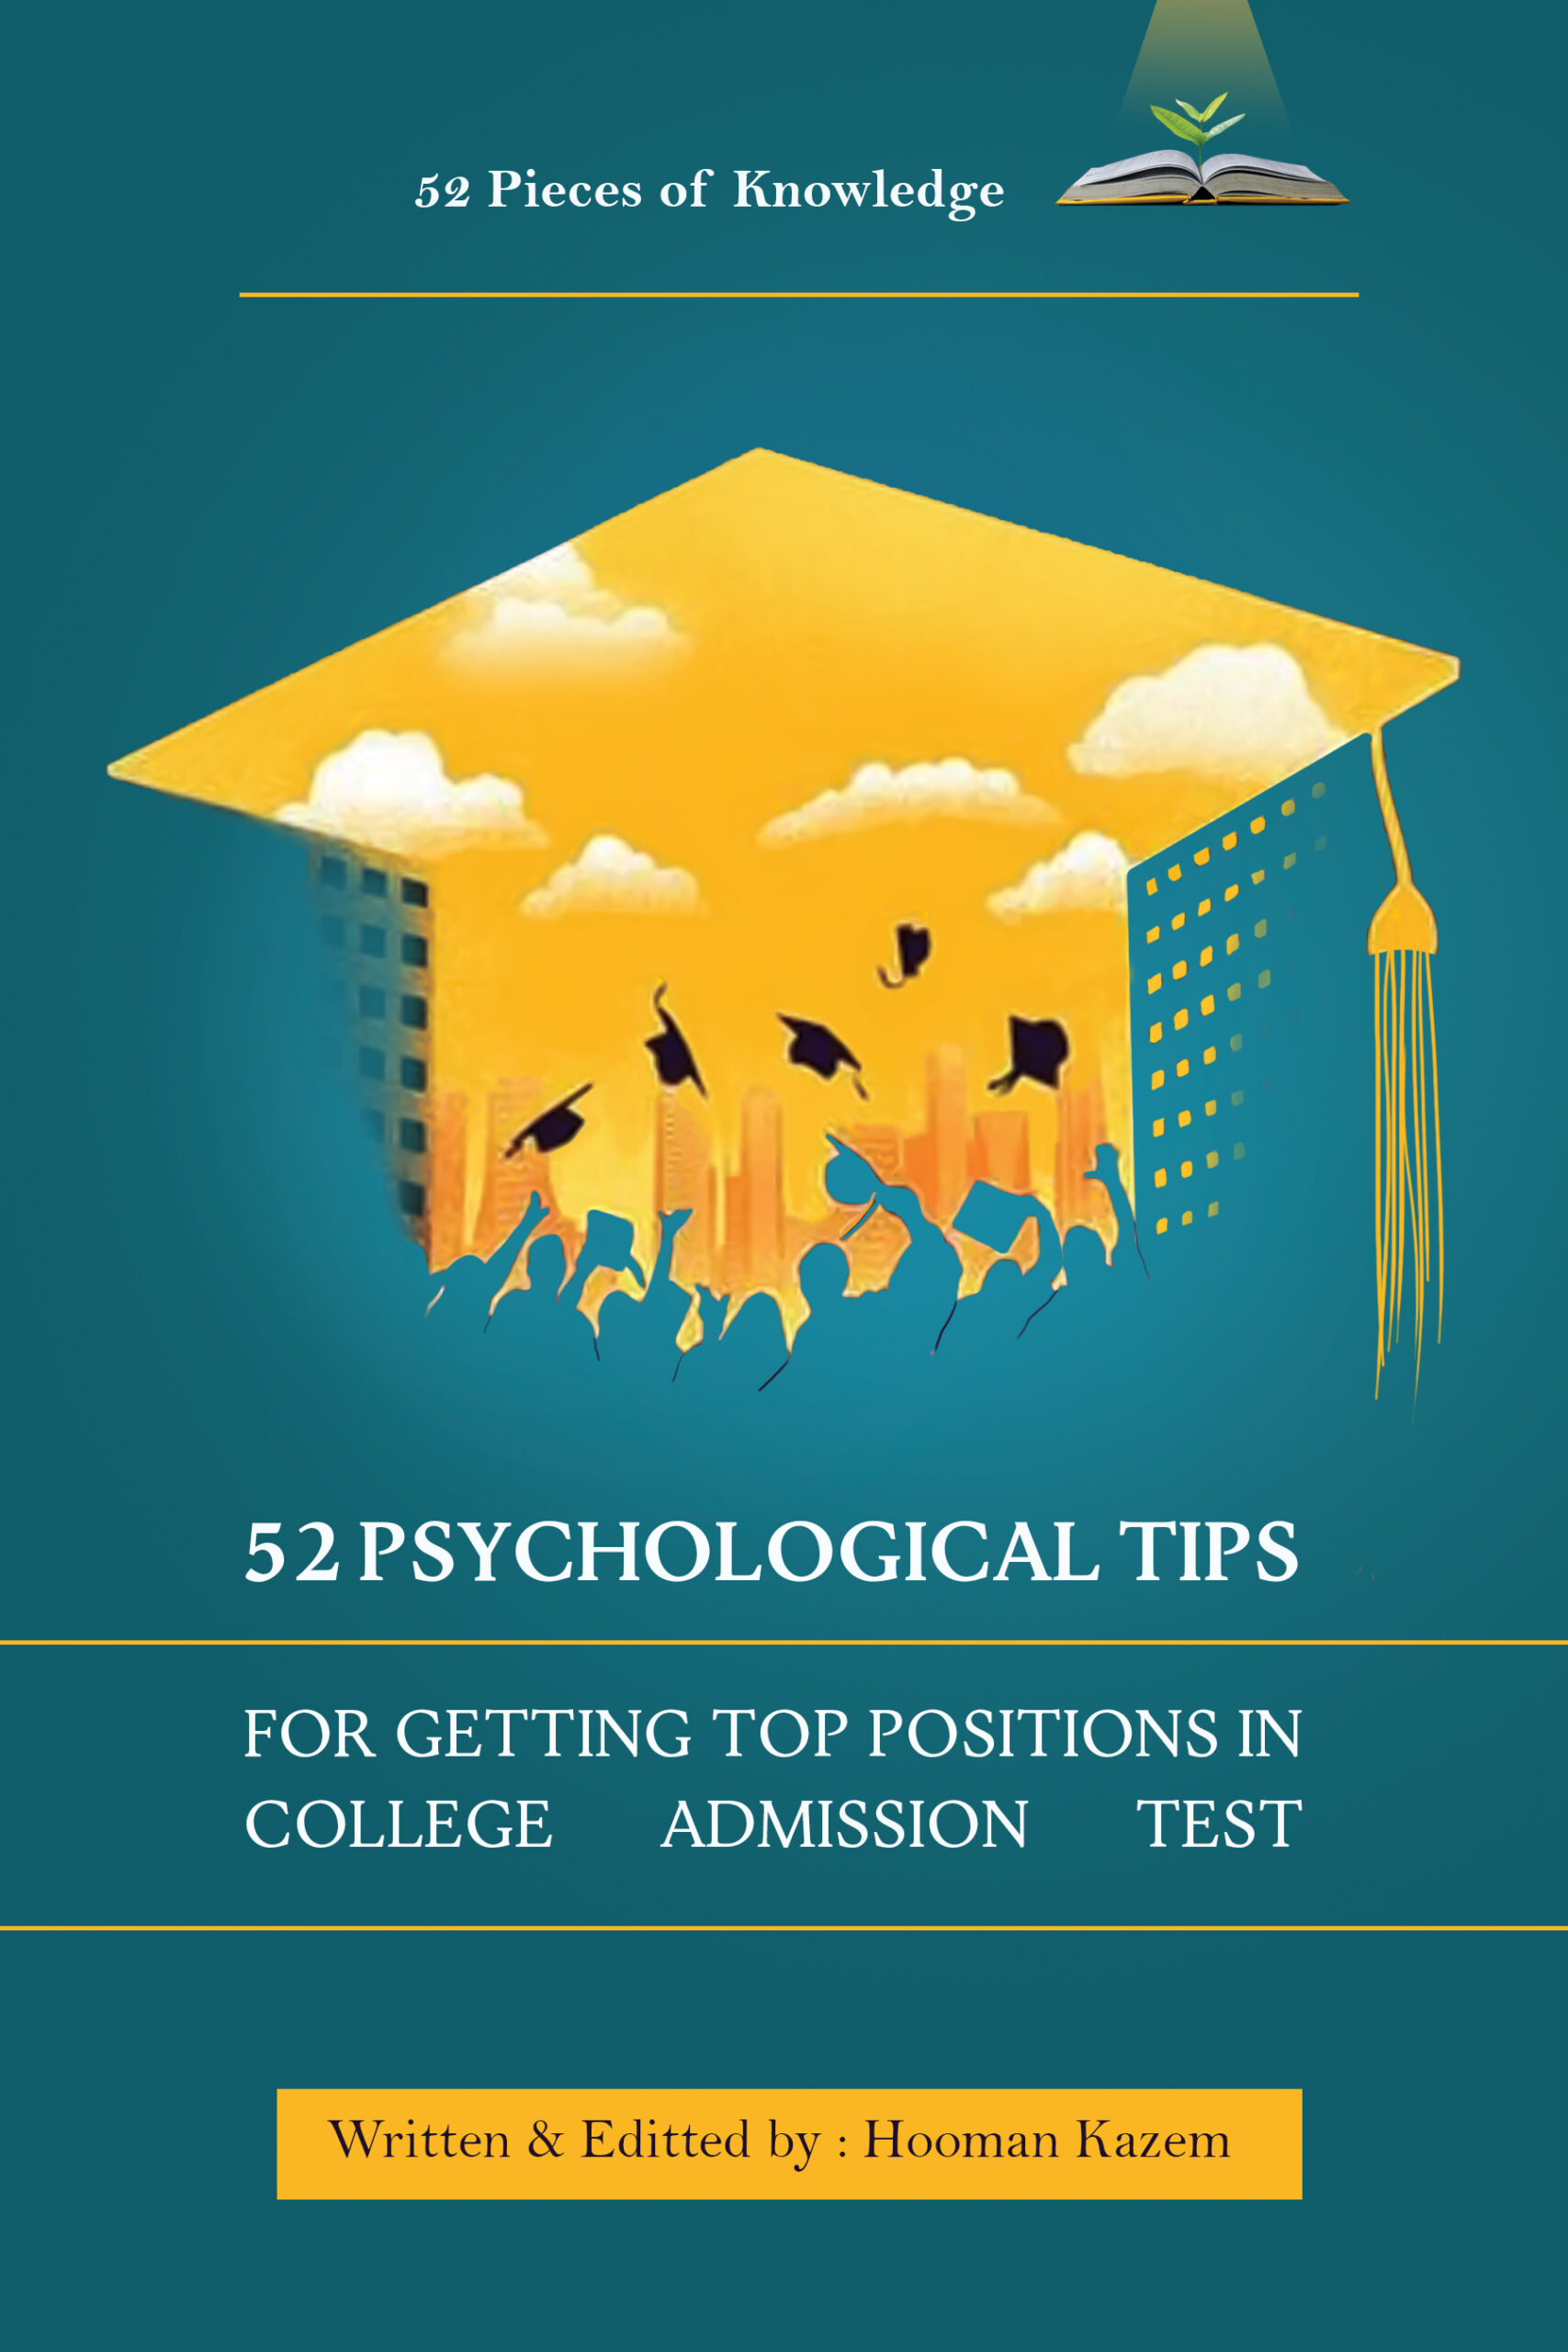 52 Psychological Tips-front (1)